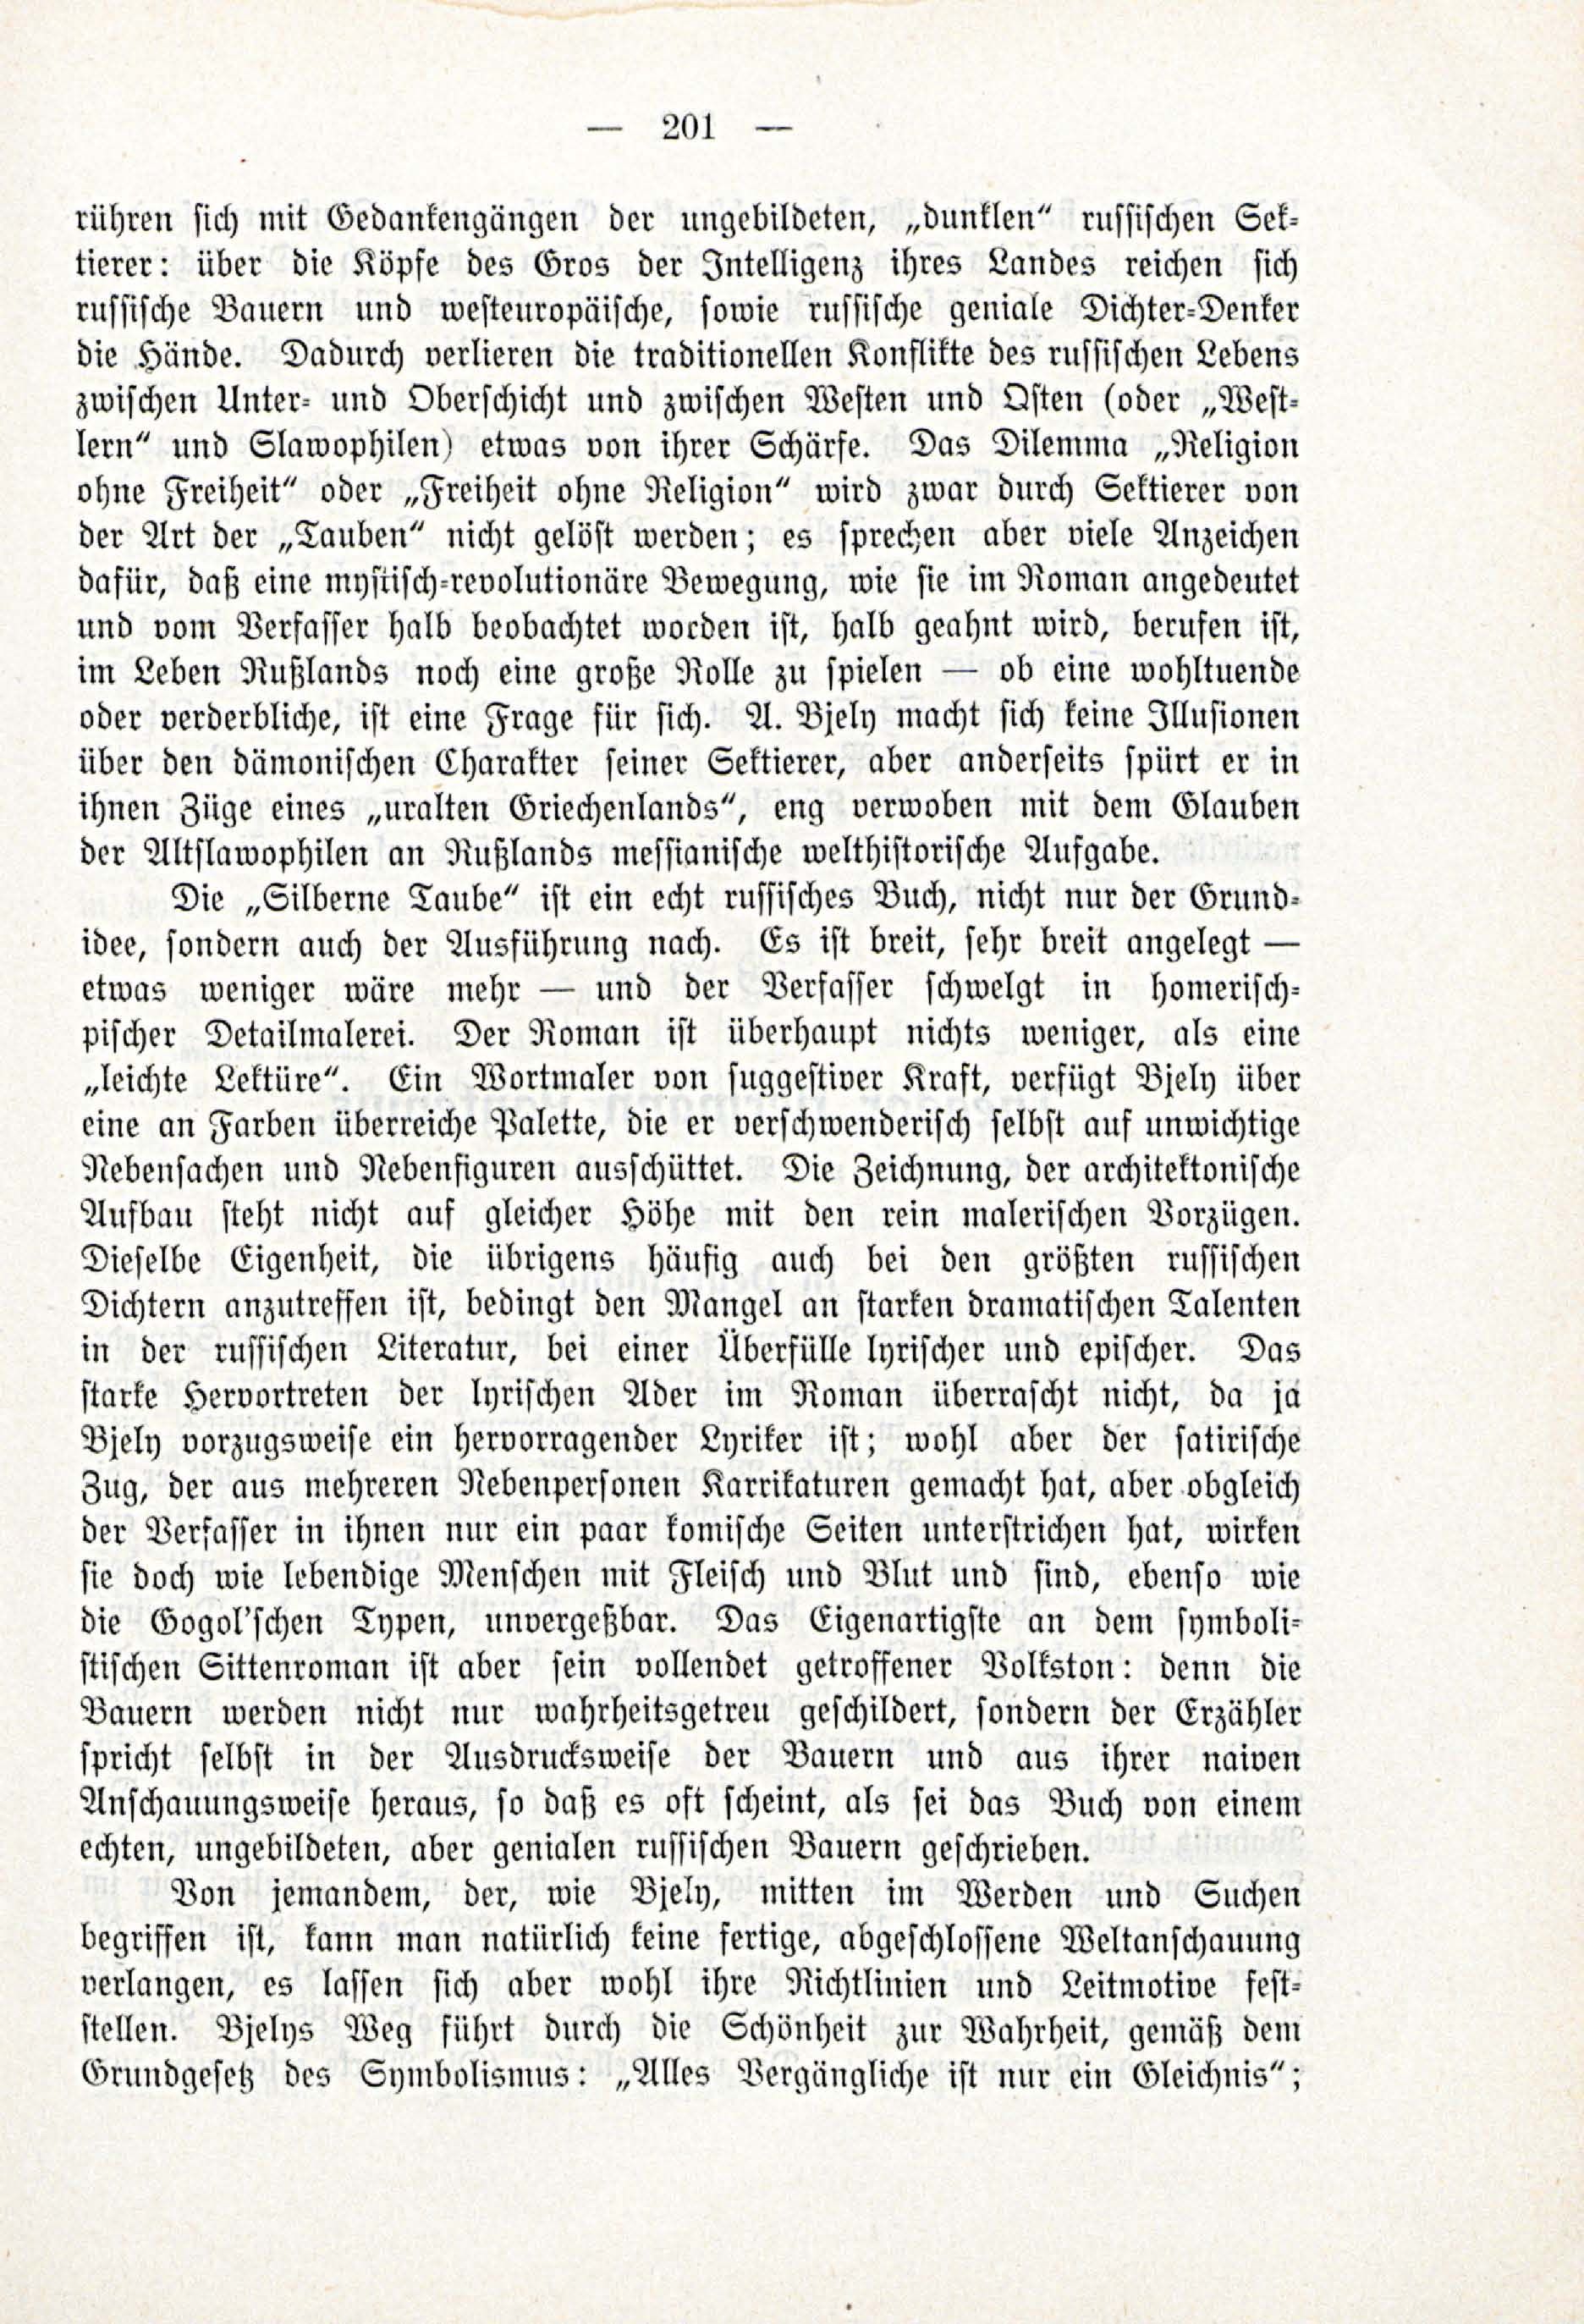 Deutsche Monatsschrift für Russland [3/03] (1914) | 47. (201) Haupttext